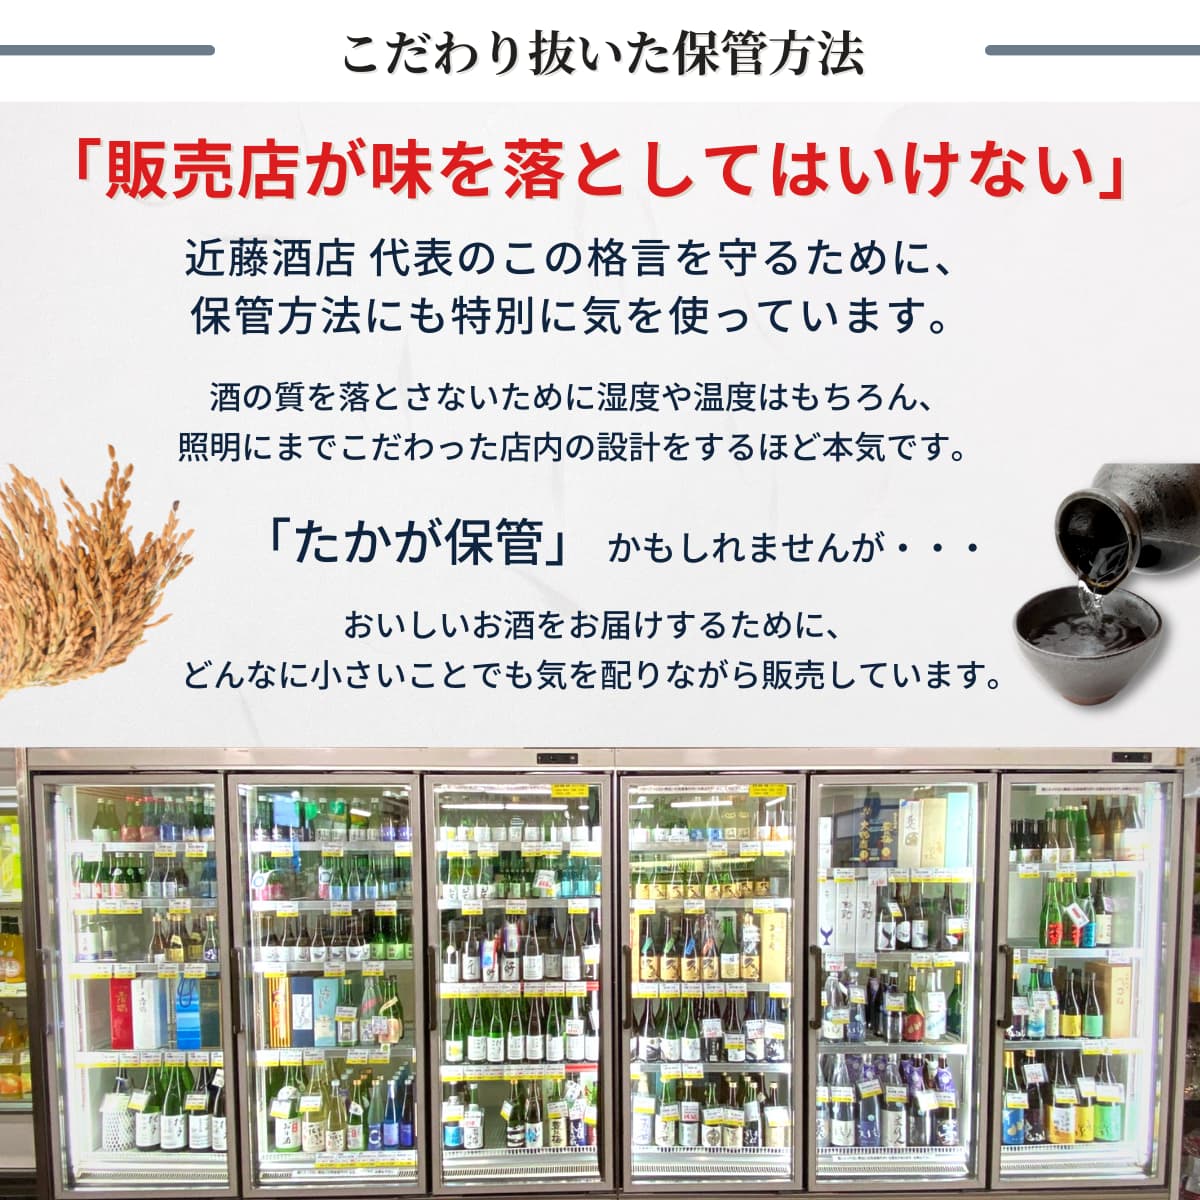 お酒まとめ売り(54本) - ビール・発泡酒